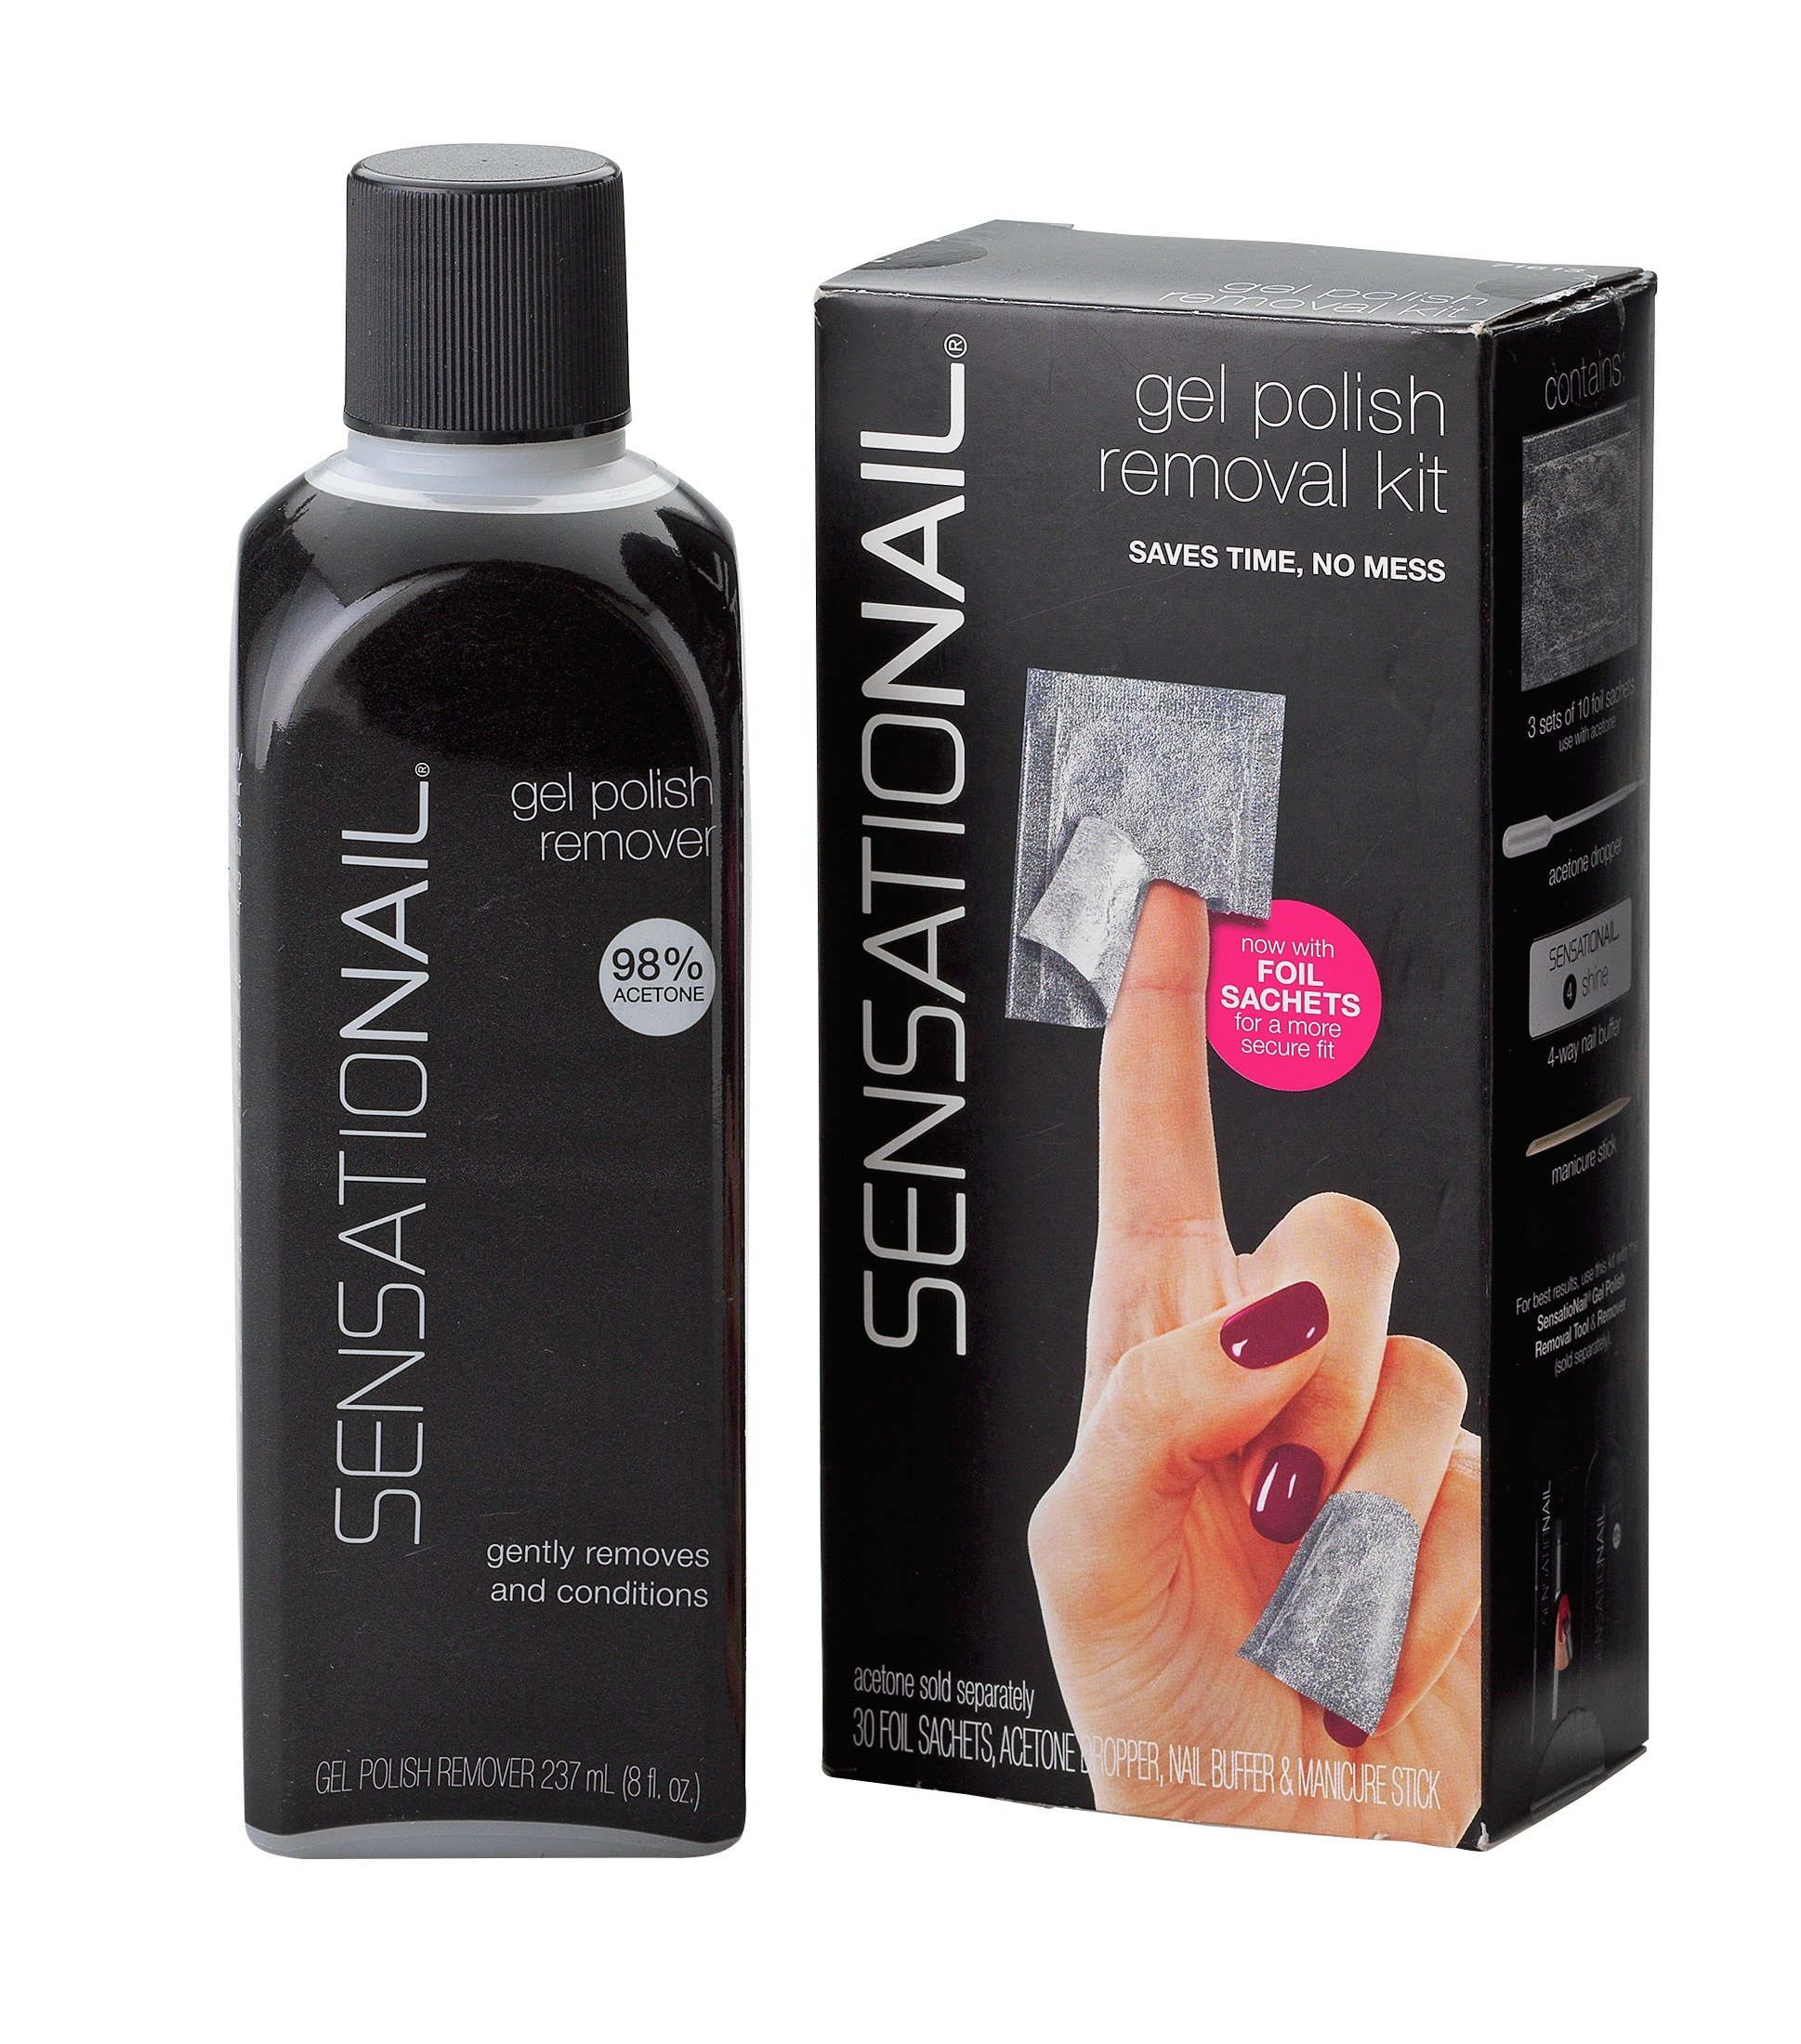 SensatioNail Removal Kit and Fluid Bundle review